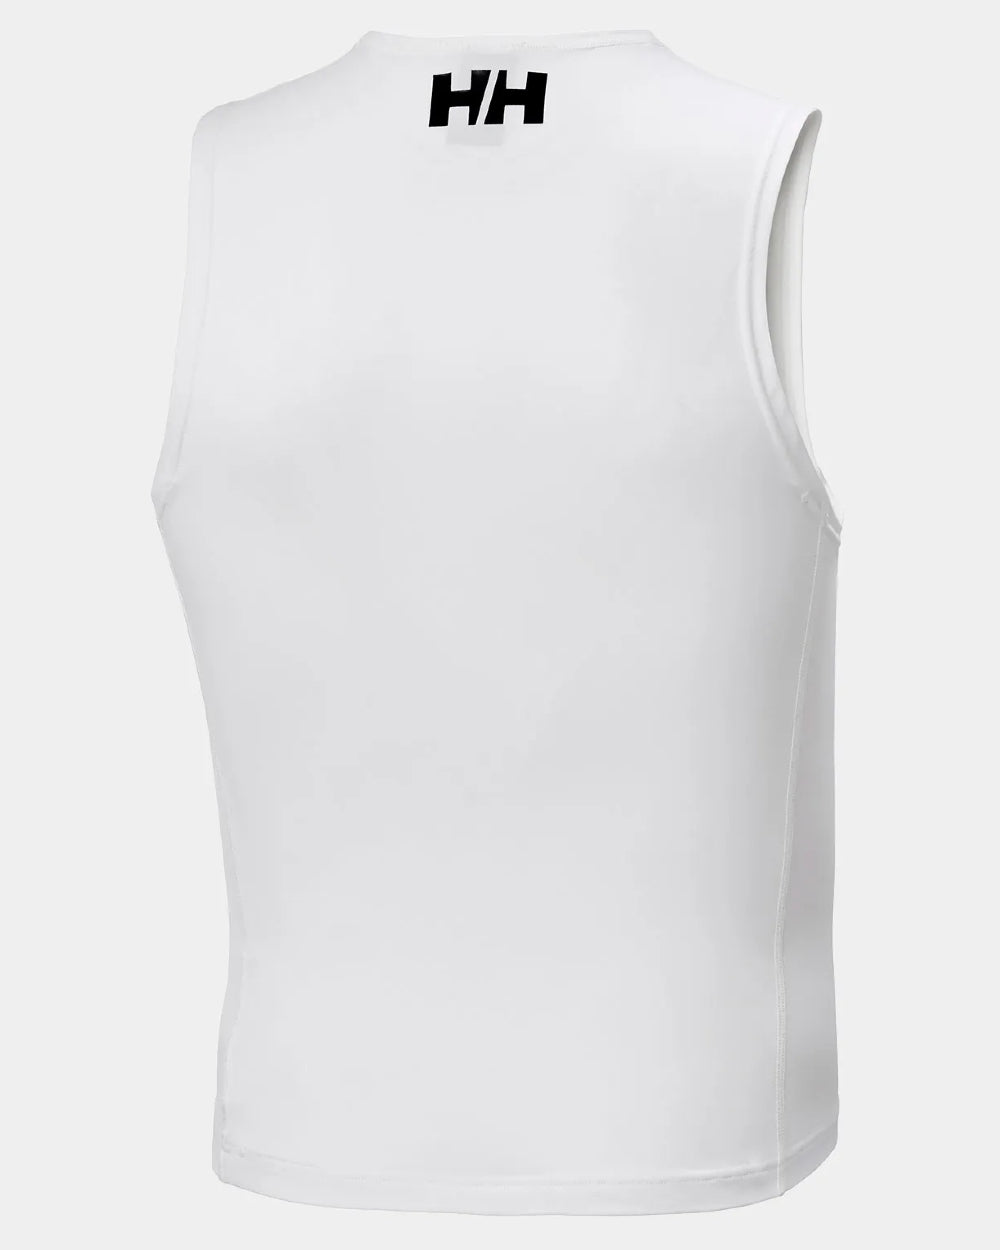 White coloured Helly Hansen Unisex Waterwear Rashvest on grey background 